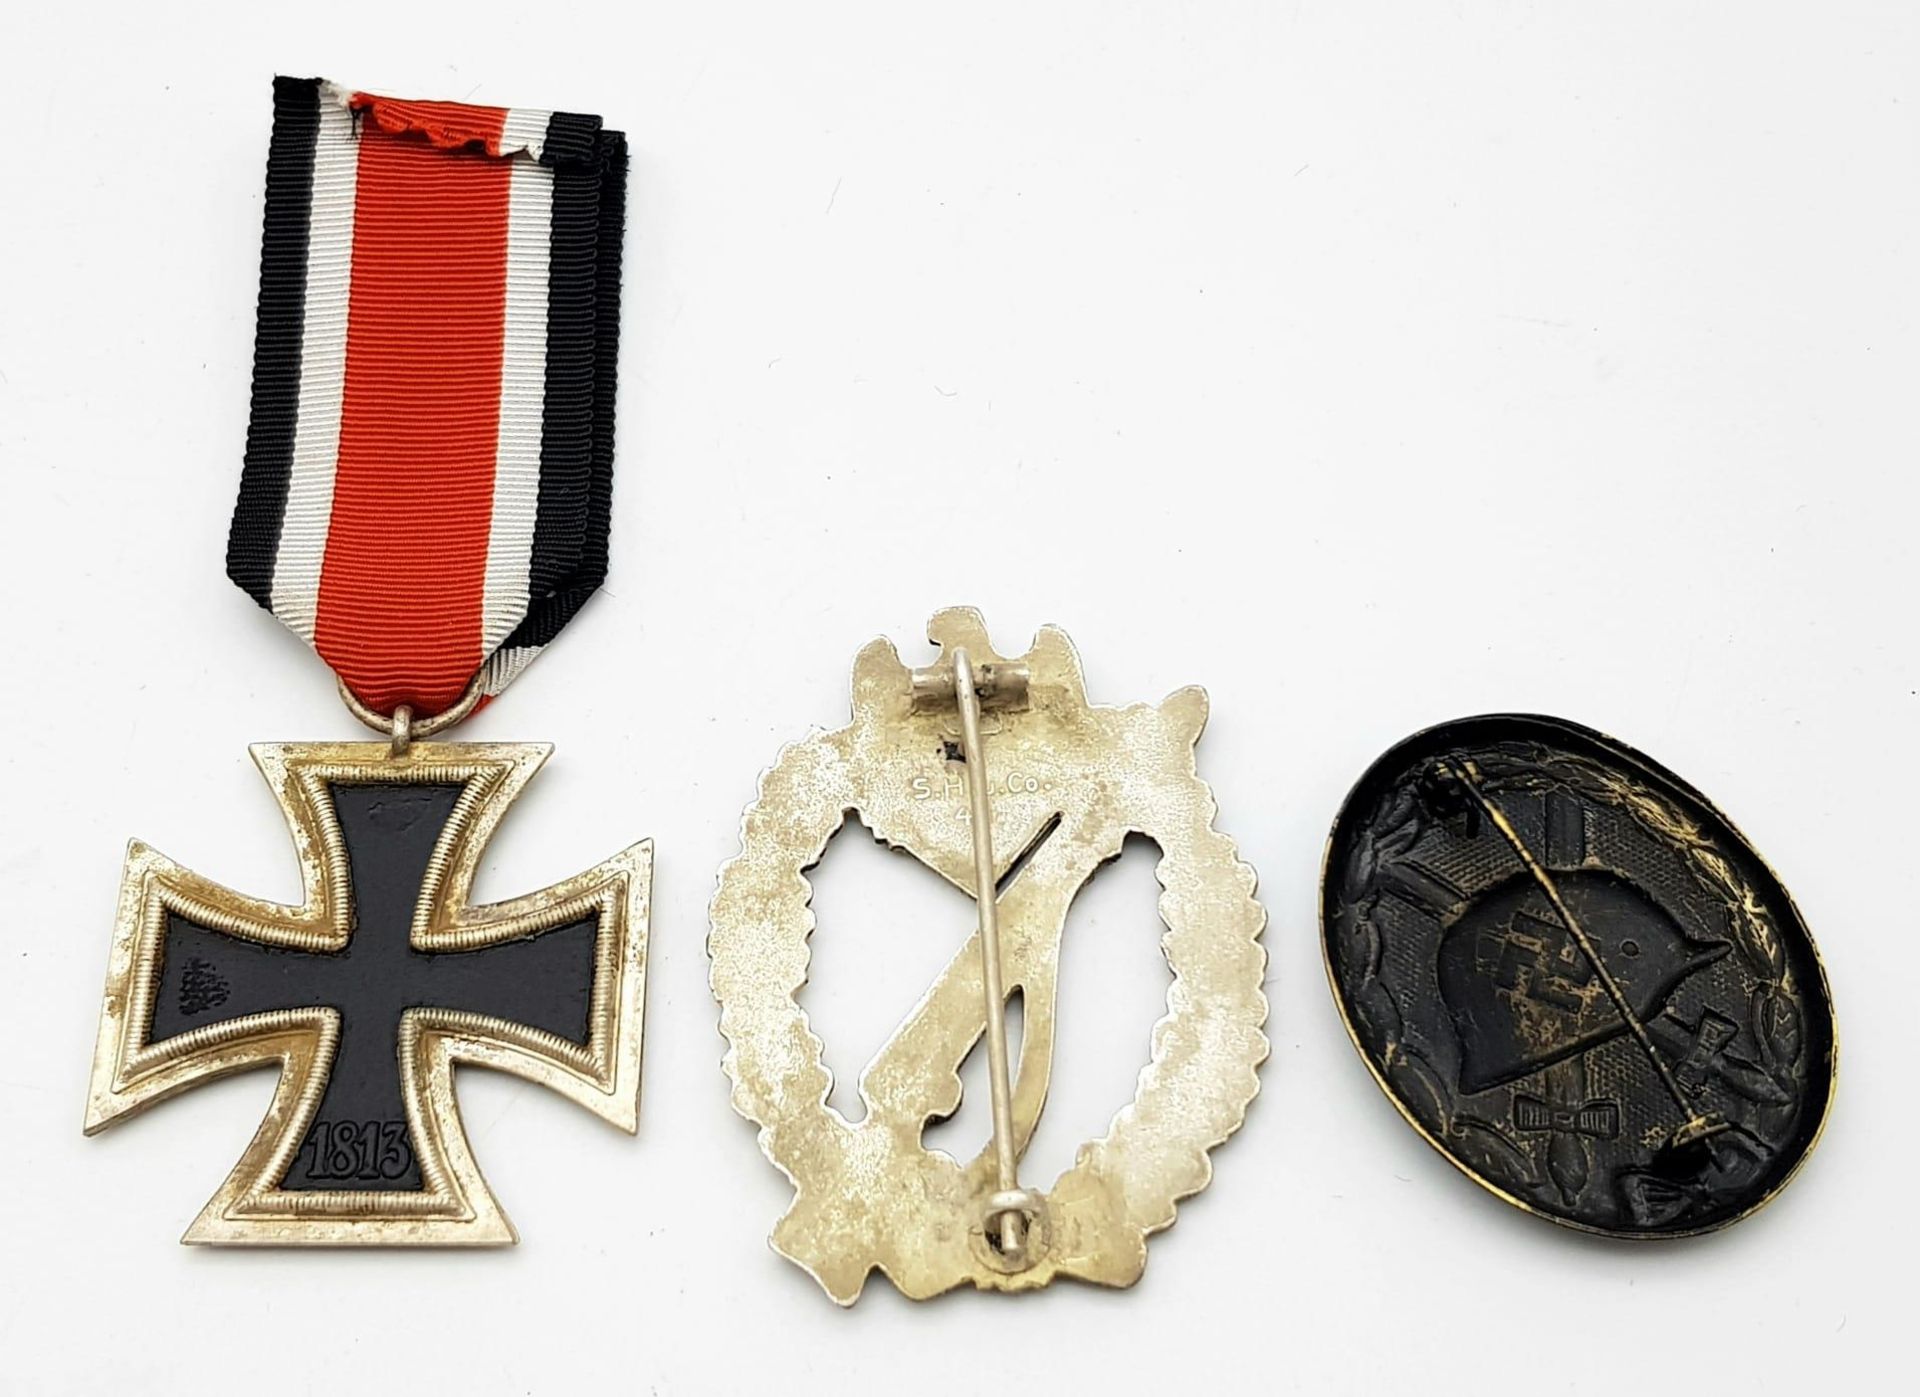 WW2 German Wehrpass and Awards for Obergefreiten Karl Hübner of the 13th Jäger Regiment which was - Bild 4 aus 13